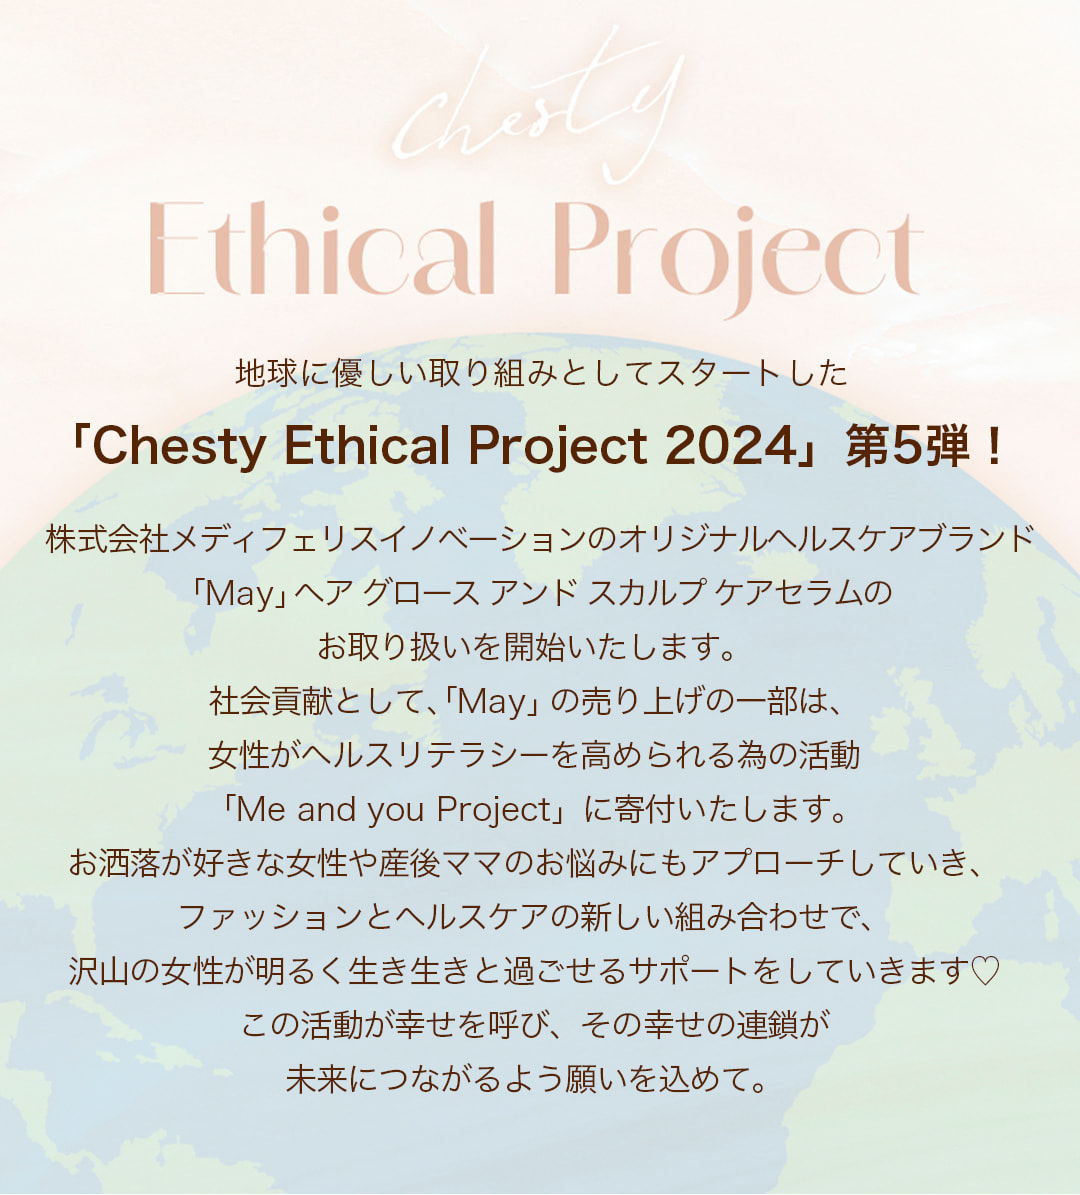 Ethical Project#5 地球に優しい取り組みとしてスタートした「Chesty Ethical Project 2024」第5弾！株式会社メディフェリスイノベーションのオリジナルヘルスケアブランド
		「May」ヘアグロースアンドスカルプケアセラムのお取り扱いを開始いたします。社会貢献として、「May」の売り上げの一部は、女性がヘルスリテラシーを高められる為の活動「Me and you Project」に寄付いたします。お洒落が好きな女性や産後ママのお悩みにもアプローチしていき、ファッションとヘルスケアの新しい組み合わせで、沢山の女性が明るく生き生きと過ごせるサポートをしていきます。この活動が幸せを呼び、その幸せの連鎖が未来につながるよう願いを込めて。